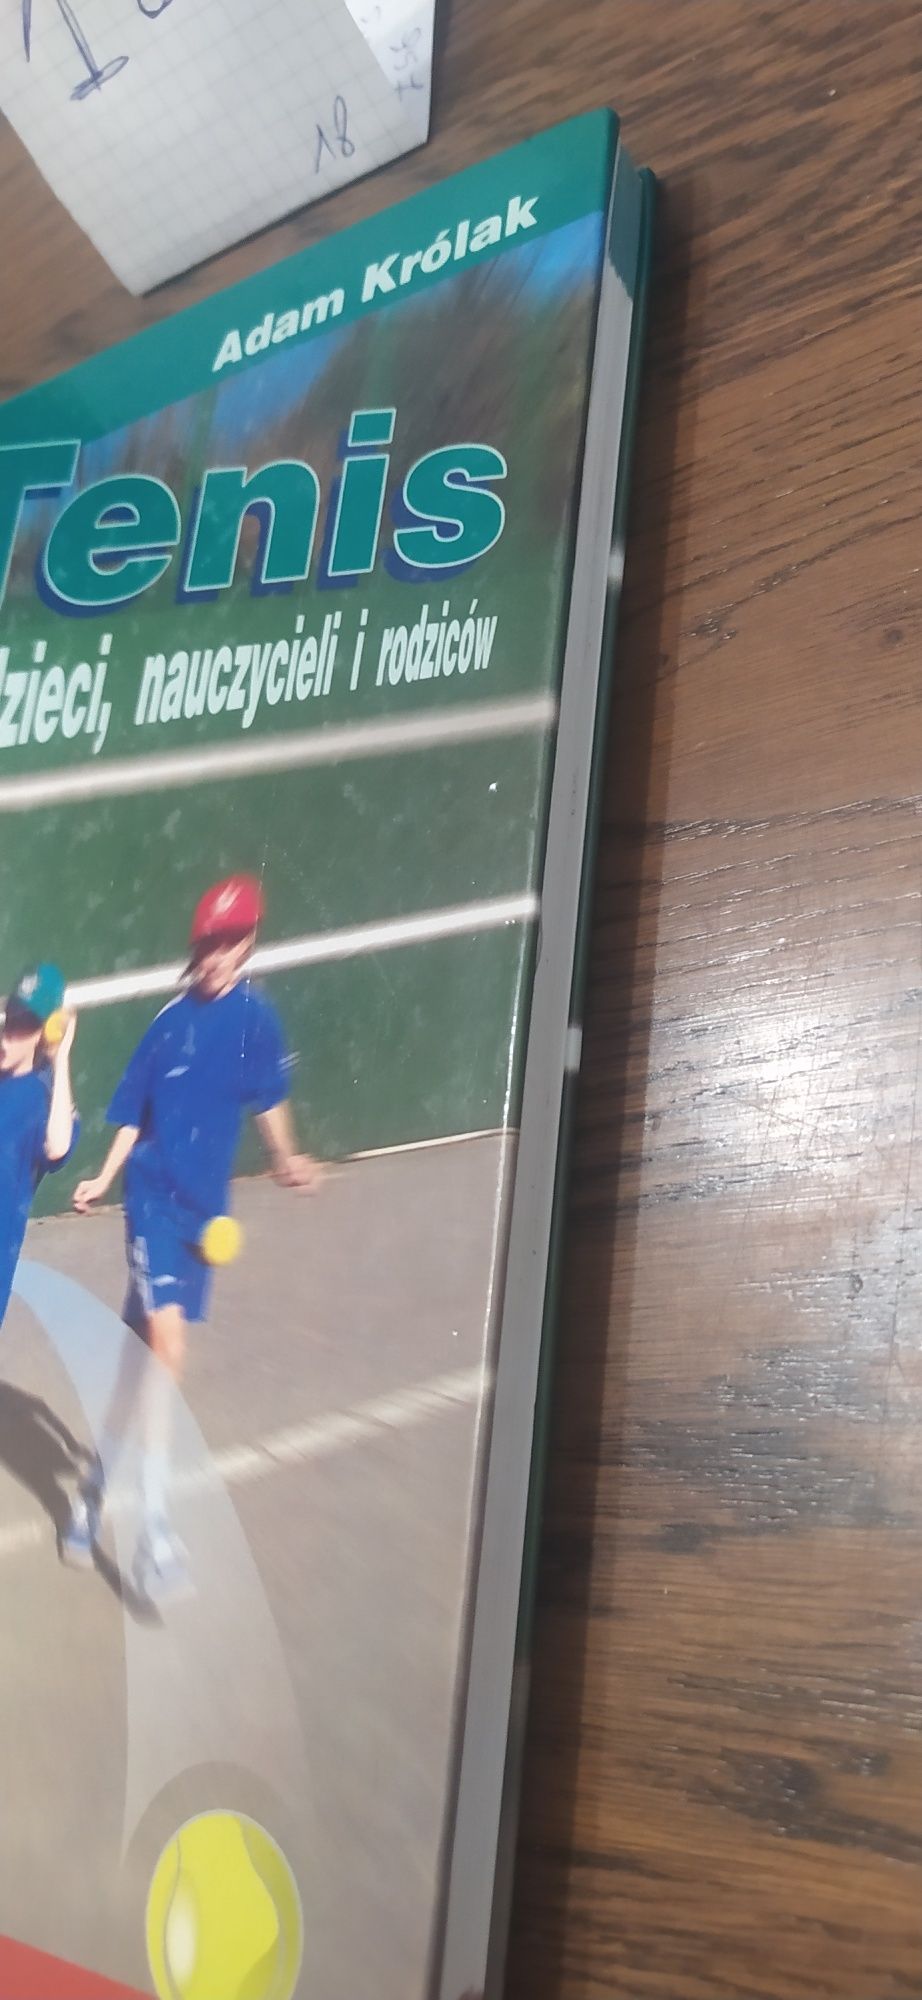 Tenis dla dzieci, nauczycieli i rodziców Adam Królak